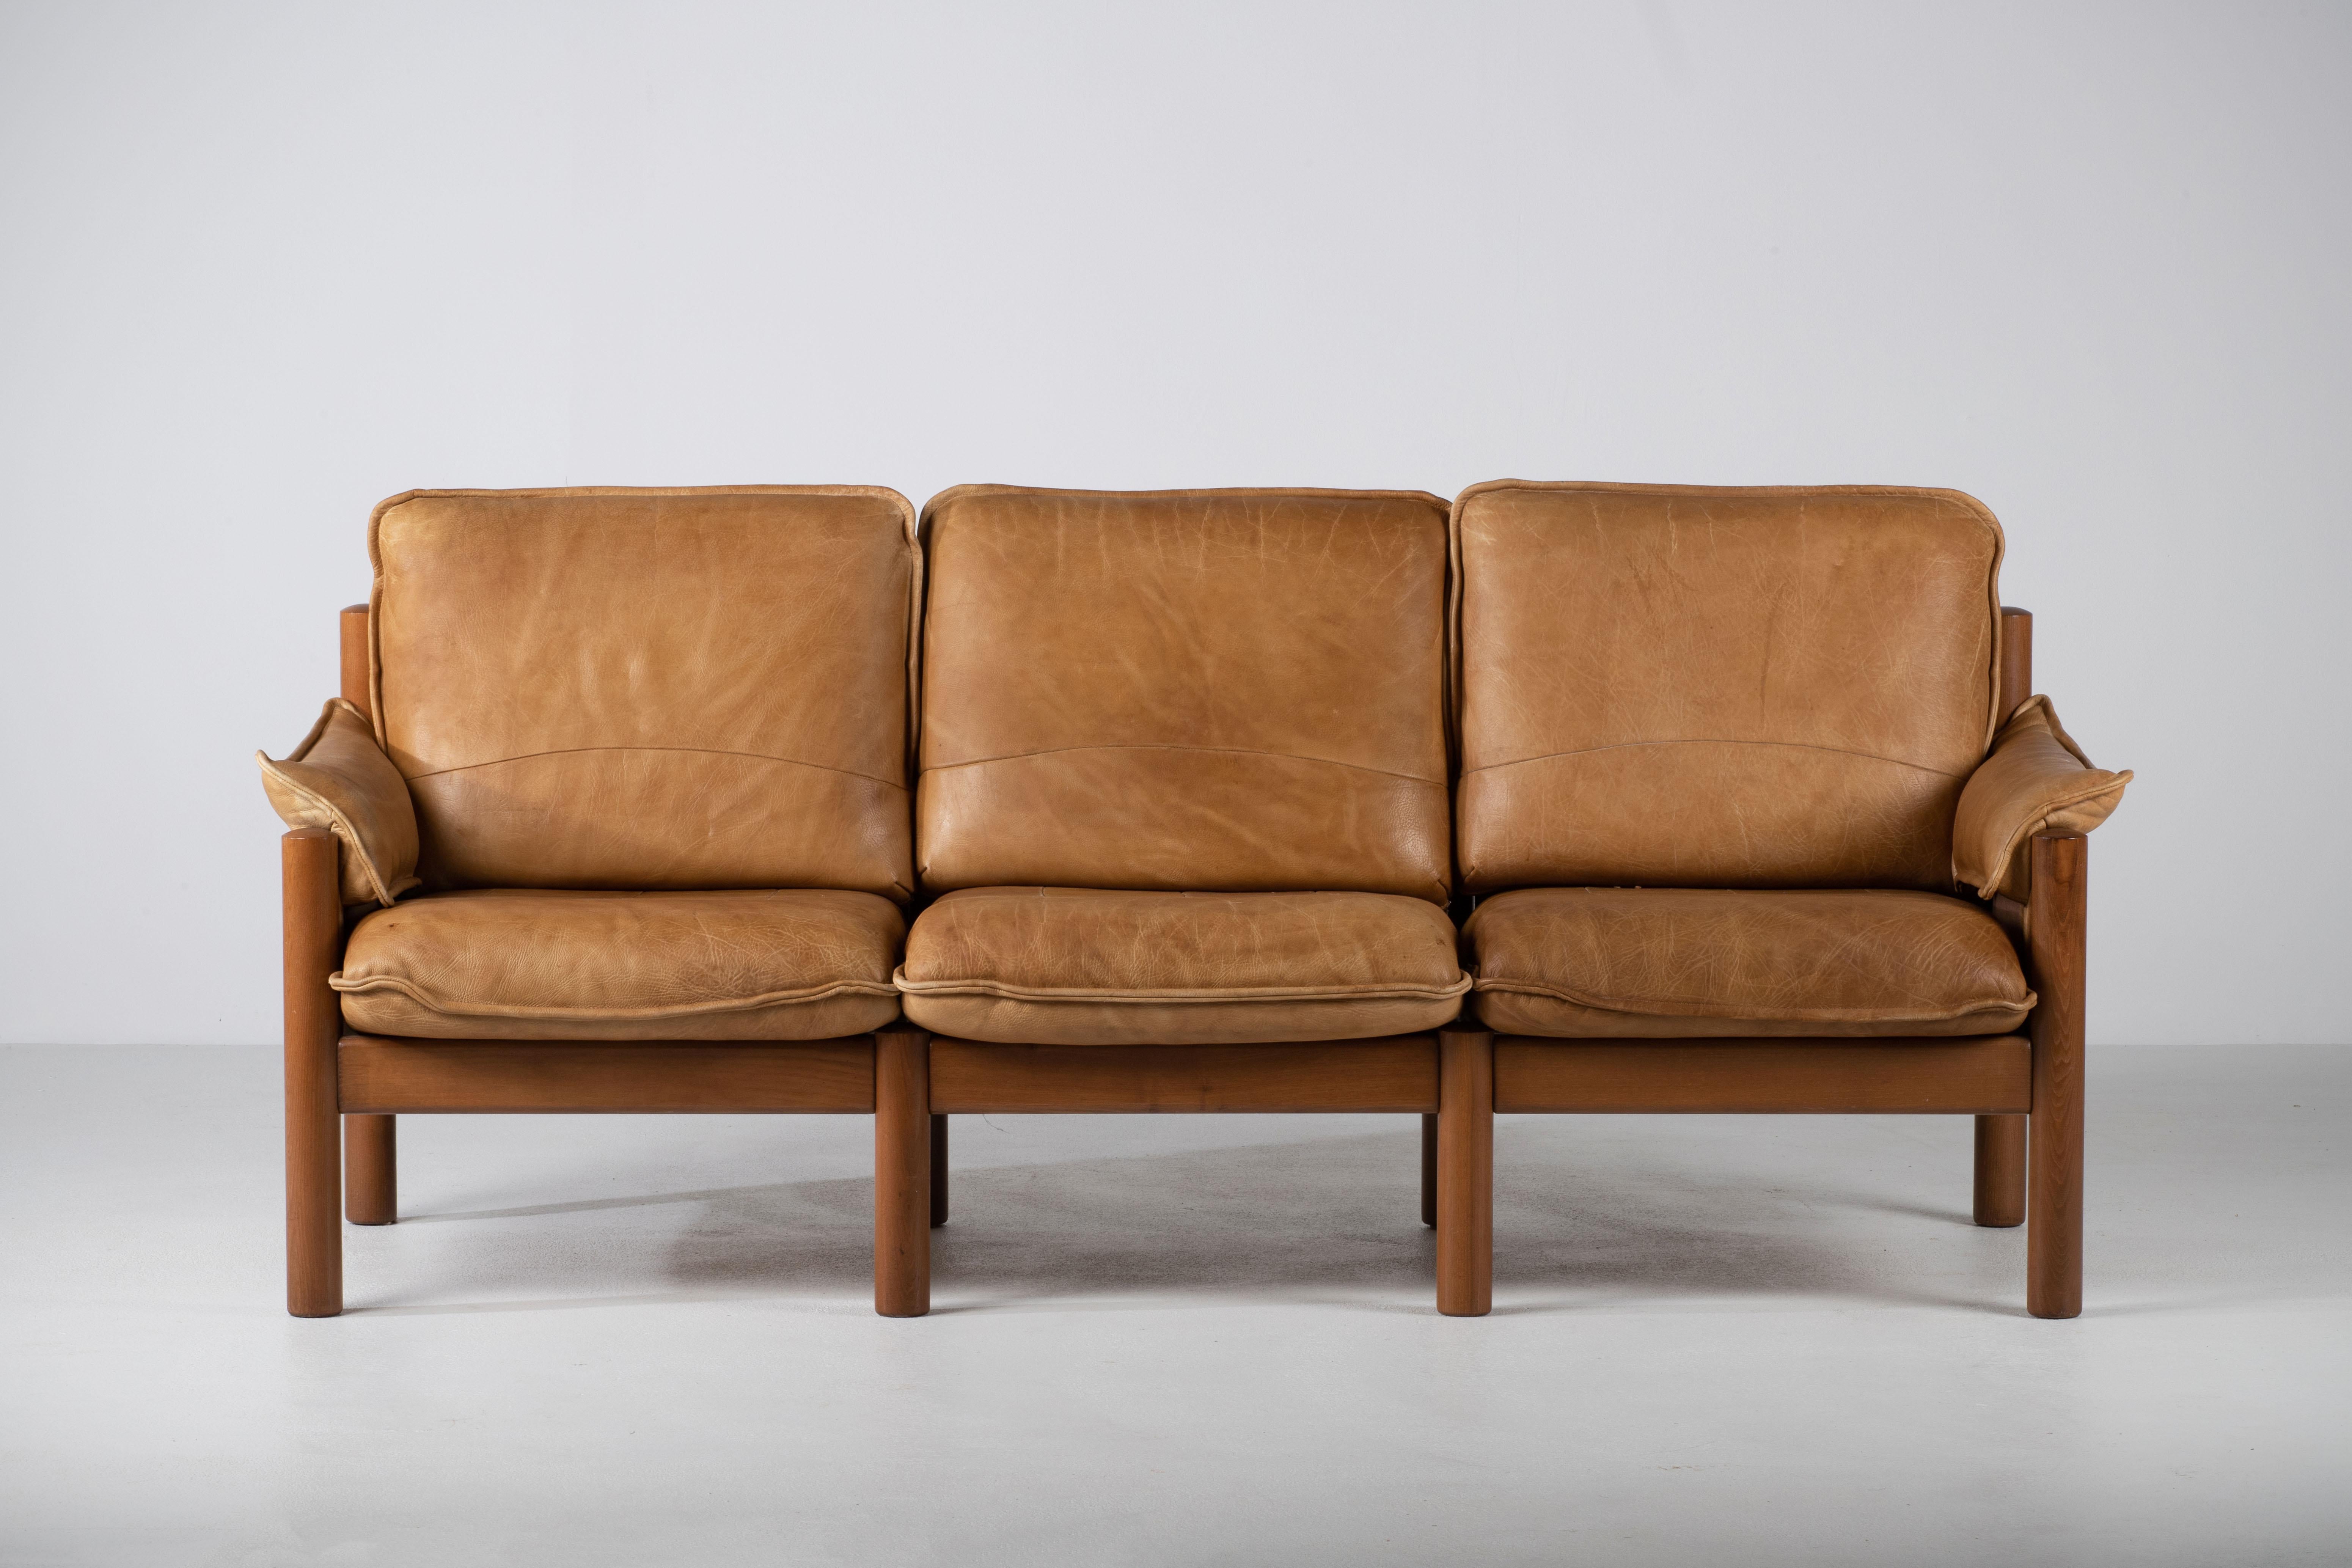 Mid-Century drei Sitze Sofa in einem braunen Leder.
Guter Vintage-Zustand mit geringen Gebrauchsspuren.
 